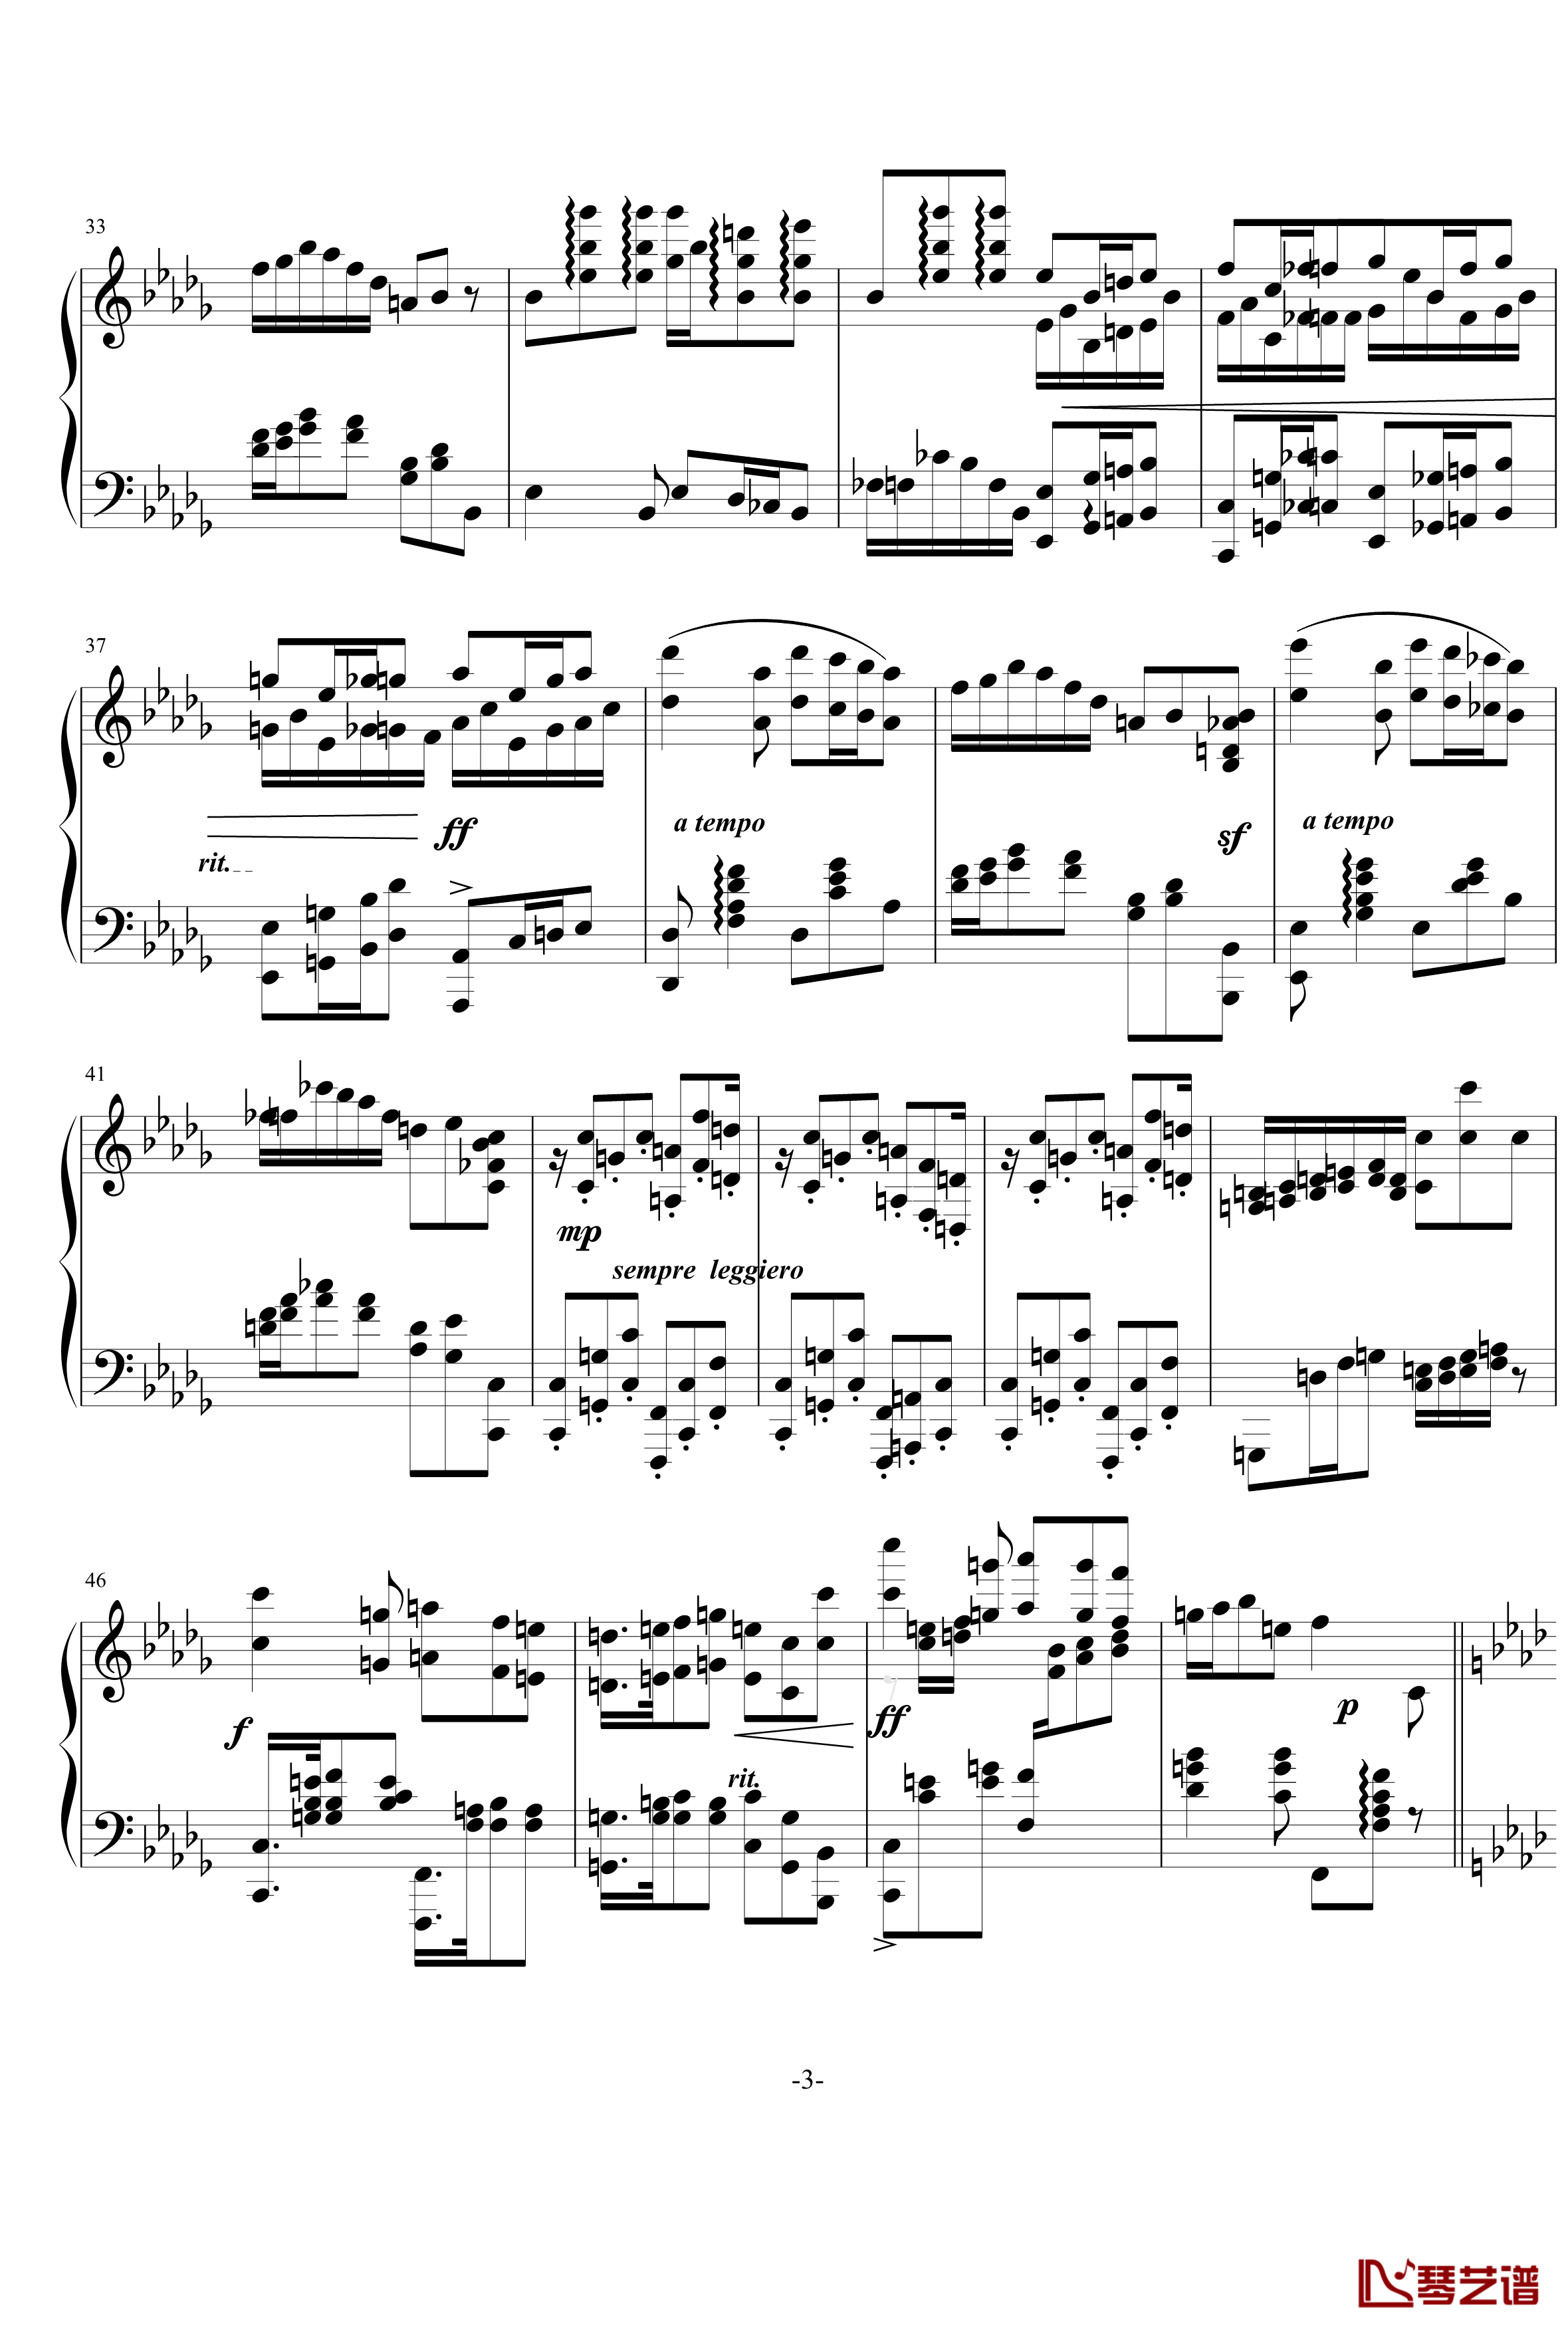 小步舞曲钢琴谱-烂大俗奏鸣曲2乐章-nyride3